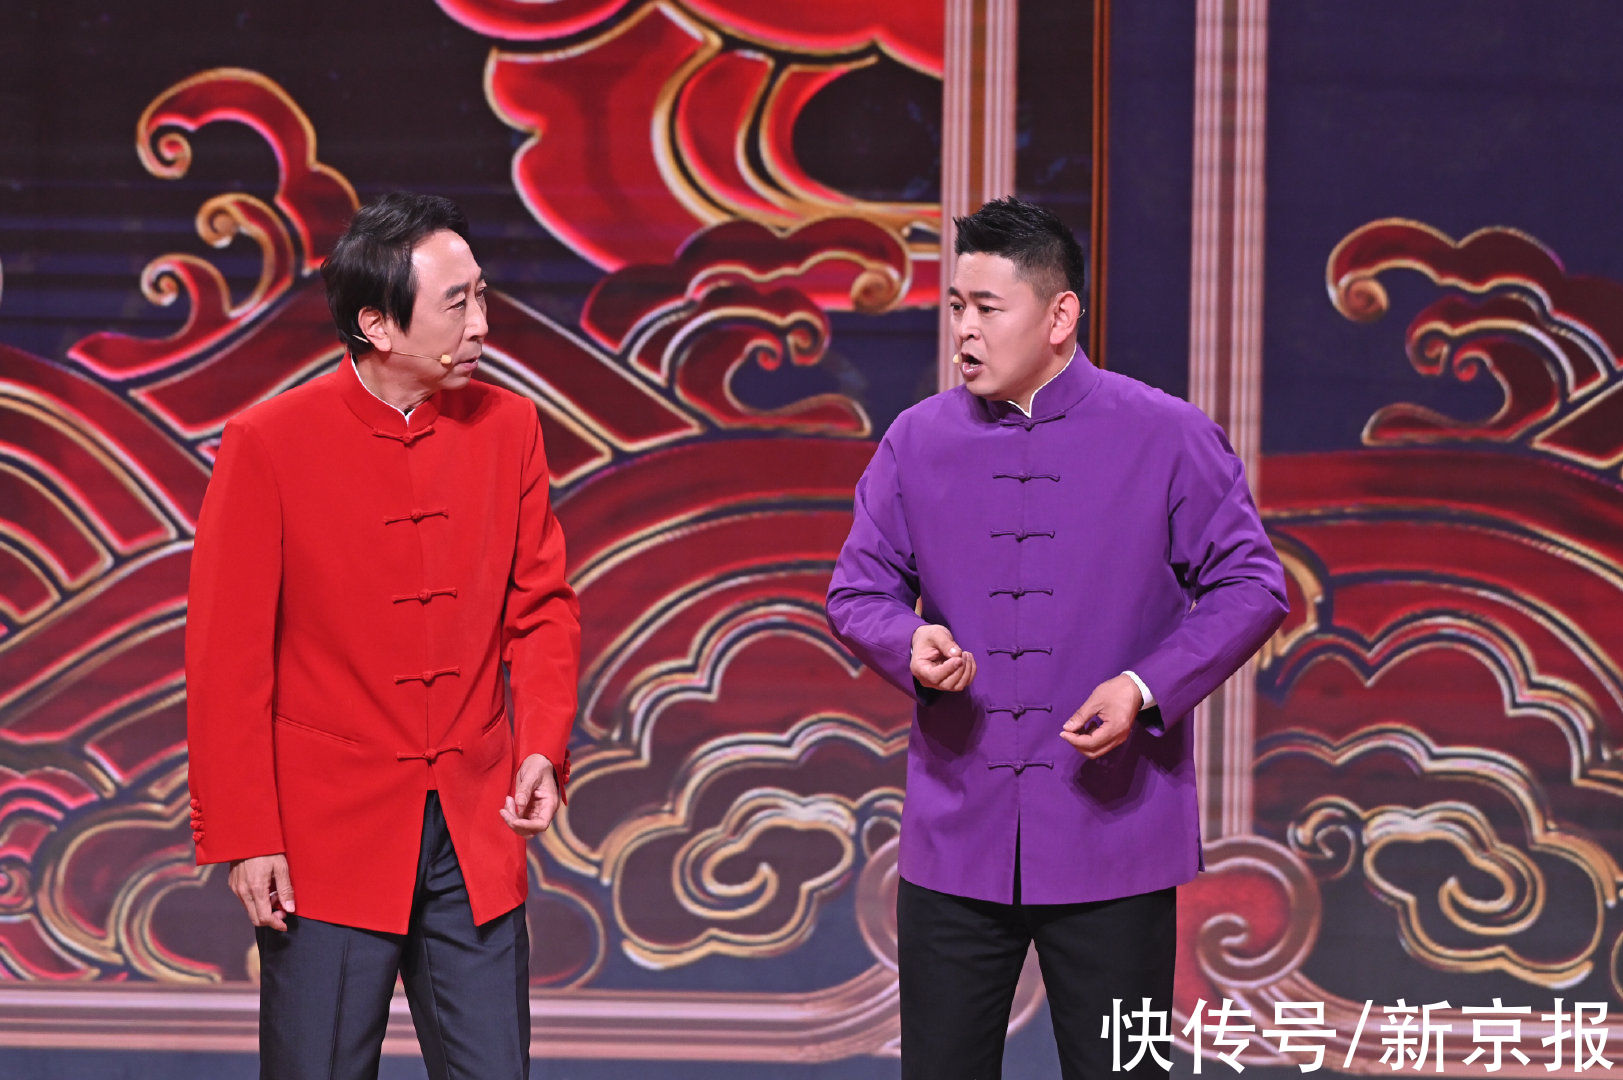 北京台春晚语言类节目打头阵，冯巩一出场年味就来了